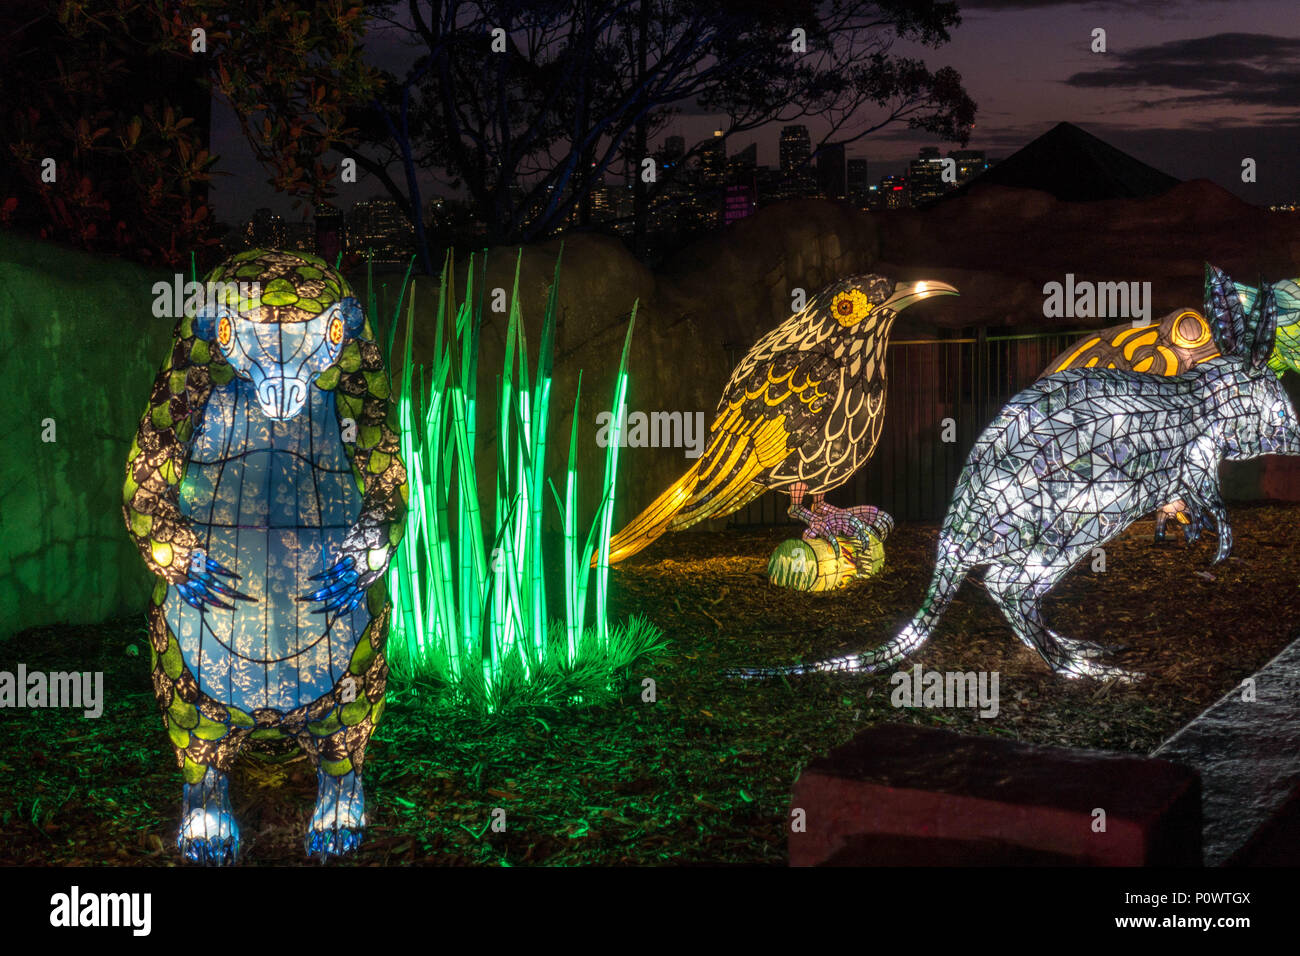 Pangolin, bilby and Regent honeyeater at Taronga Zoo for Vivid Sydney 2018 Stock Photo